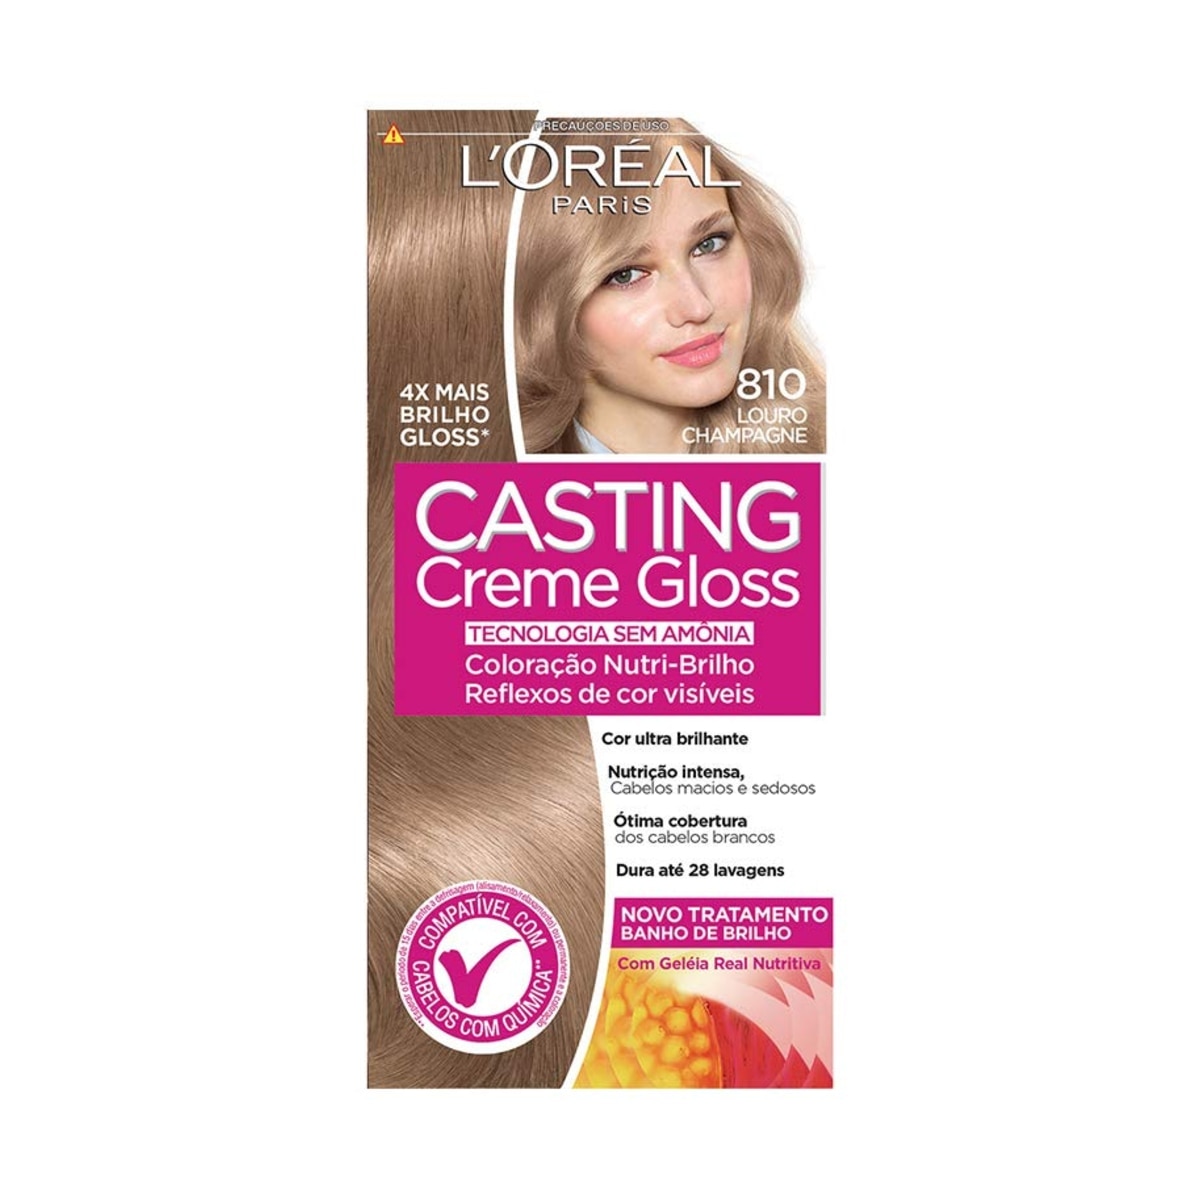 Tintura Casting Creme Gloss 810 Louro Champagne